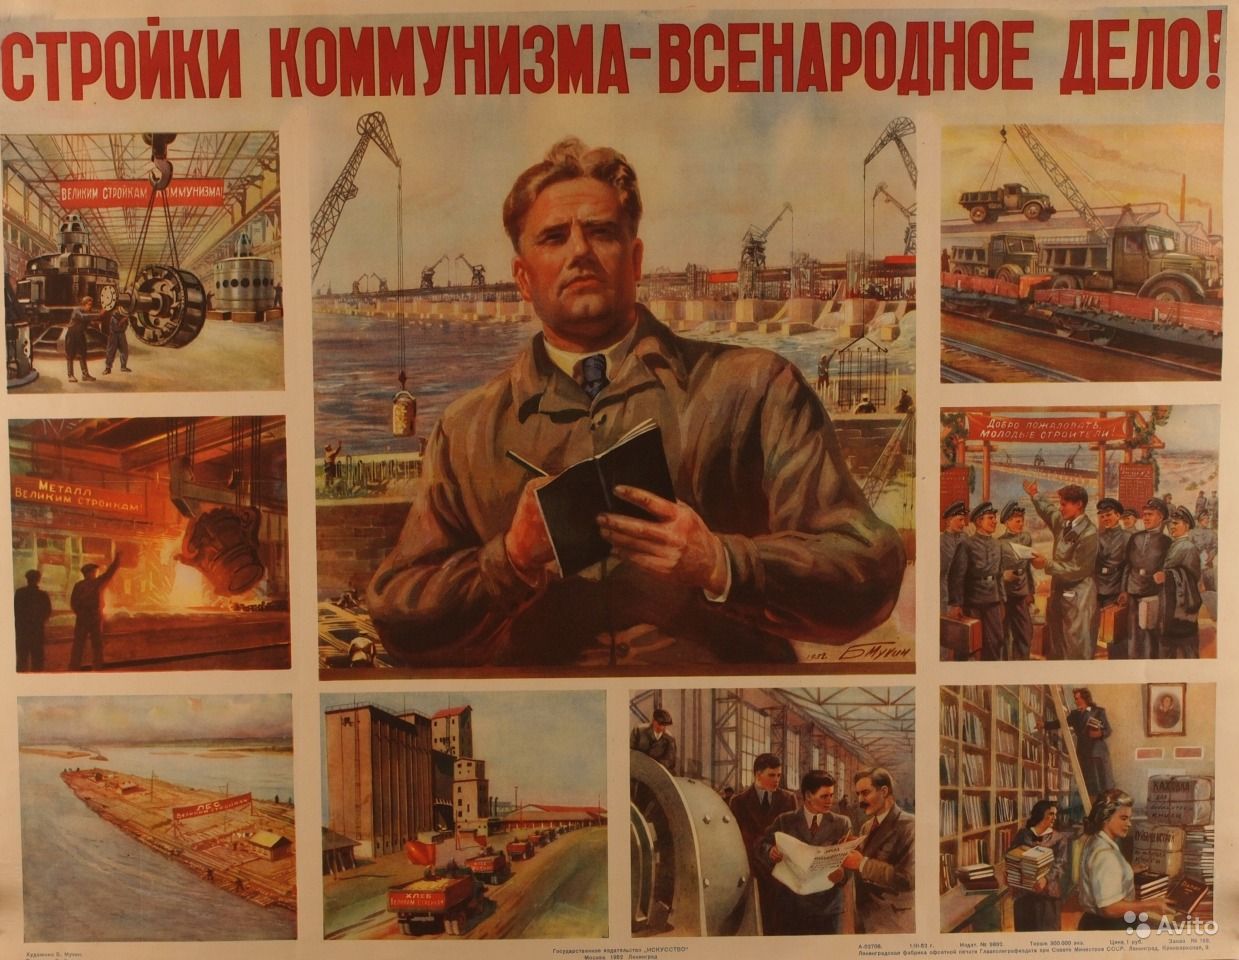 Великая страна СССР,стройки коммунизма - всенародное дело